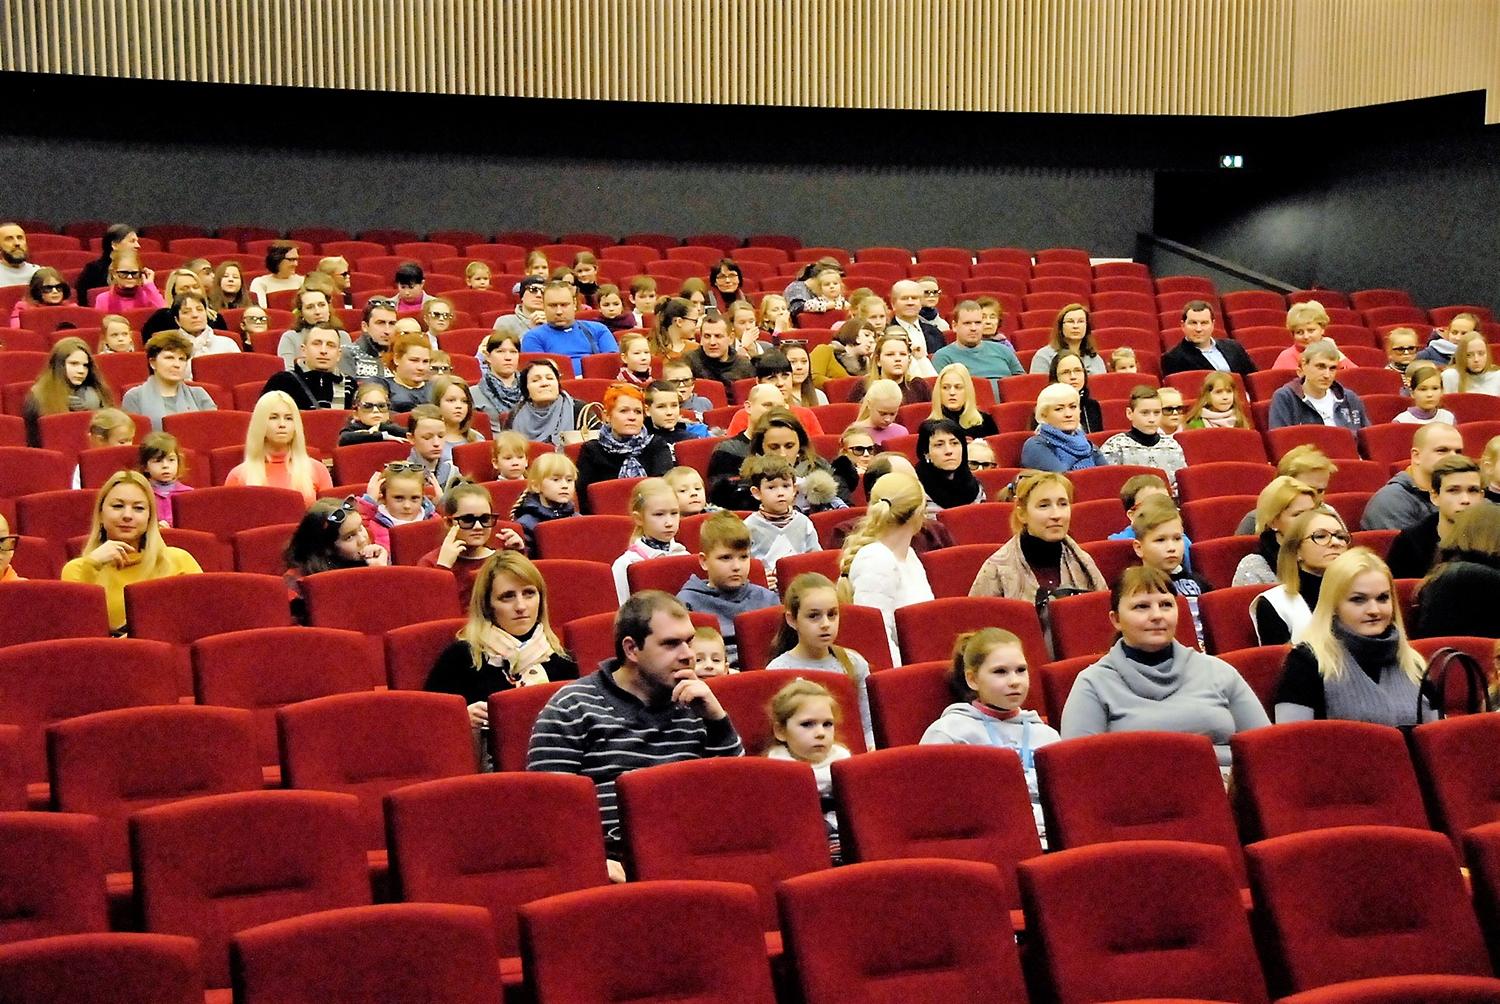 Kultūros centrą garsina kinas / Kultūros centre rodomi kino filmai mėgstami ne vien ukmergiškių. Gedimino Nemunaičio nuotr.